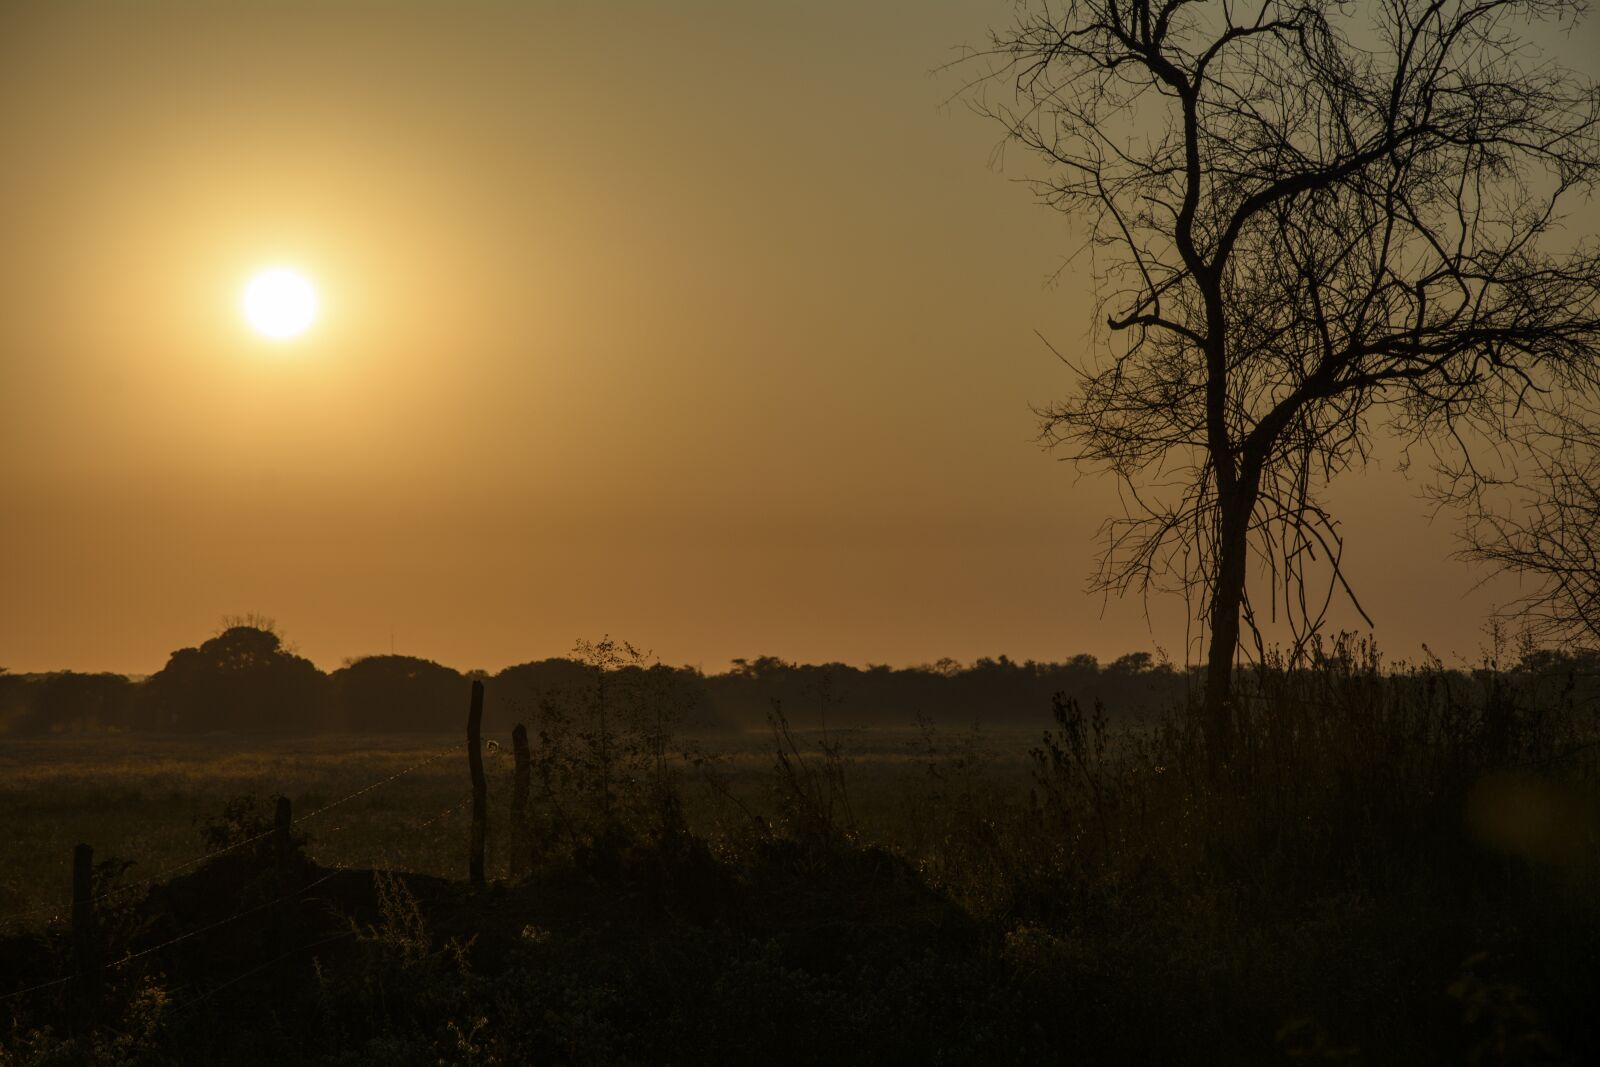 Nikon D7100 sample photo. Sun, africa, nature photography